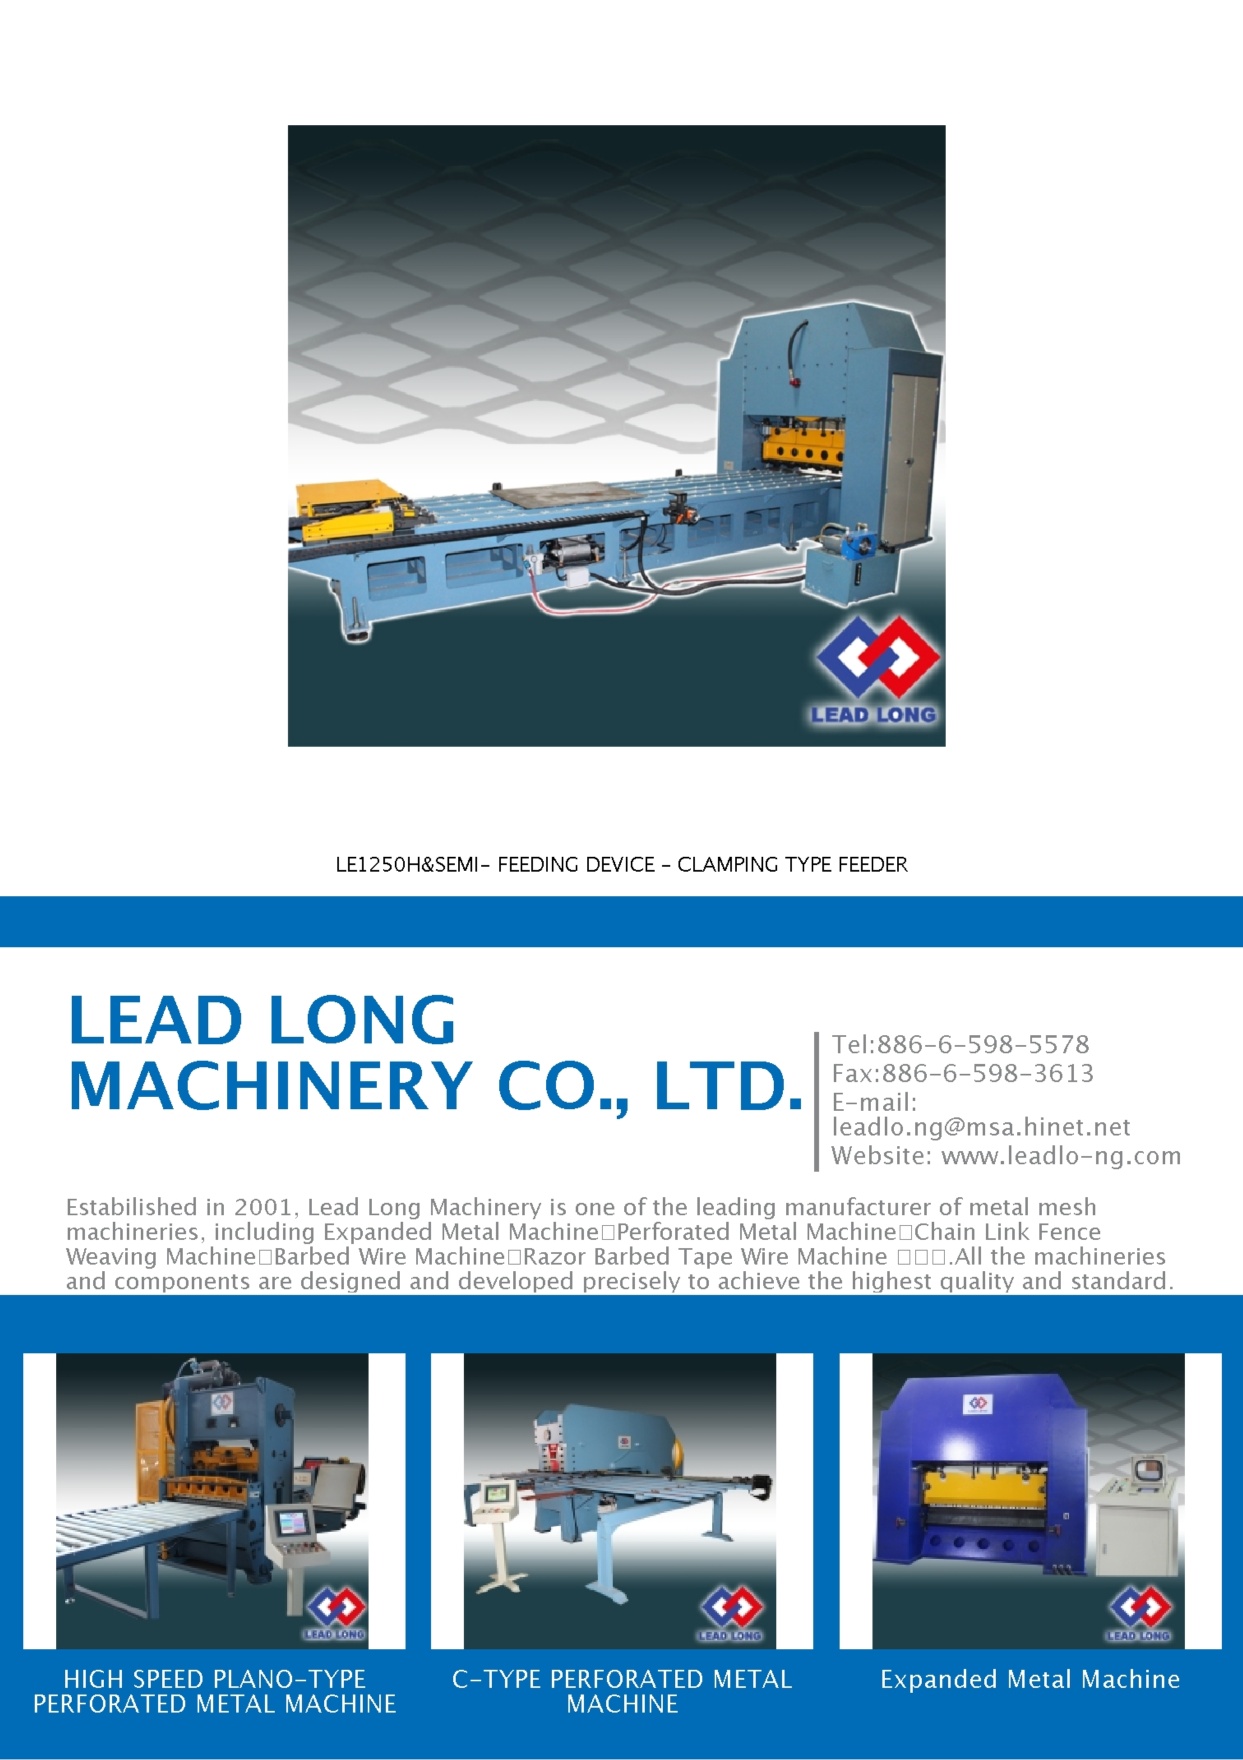 LEAD LONG MACHINERY CO., LTD.